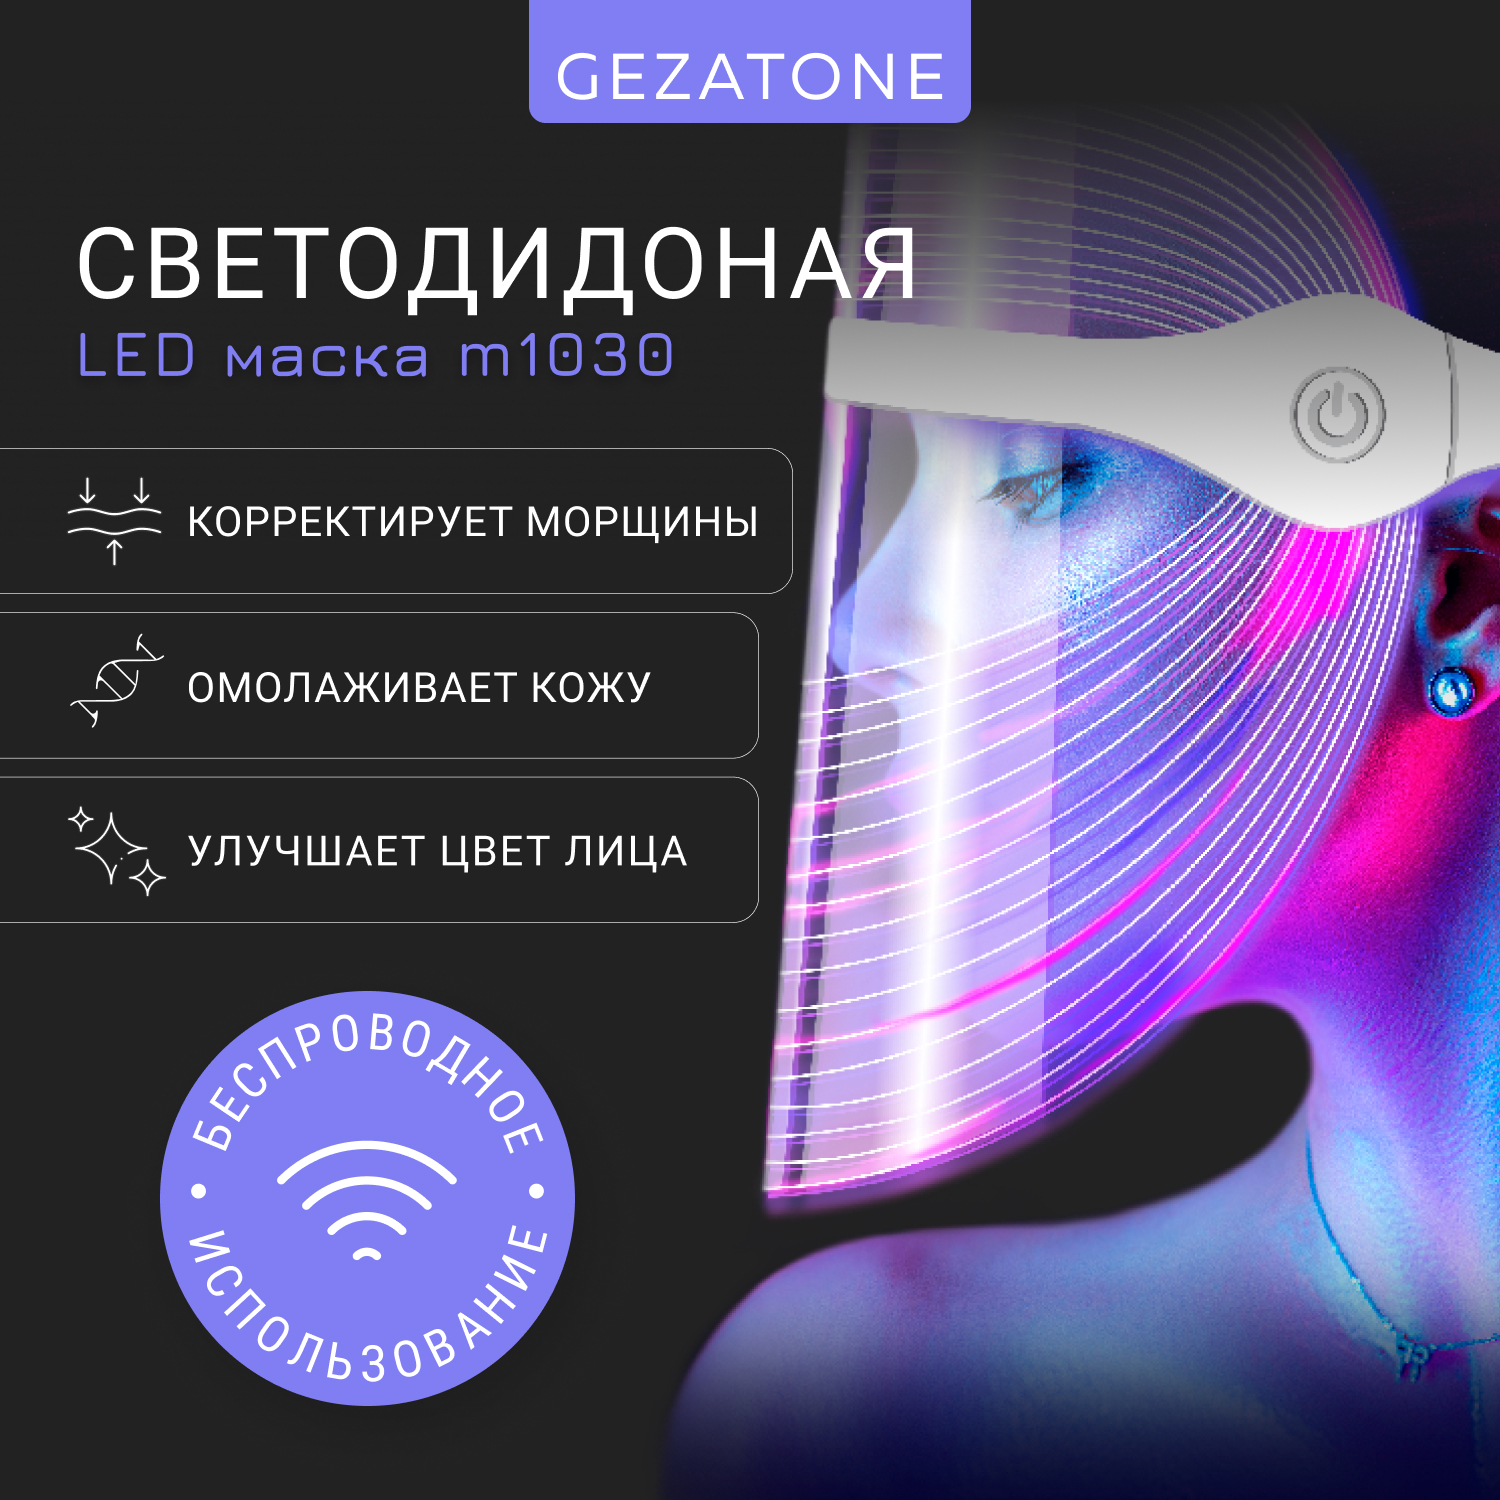 Светодиодная LED маска для омоложения кожи лица и шеи с 7 цветами Gezatone m1030 инструкция по эксплуатации судьбы